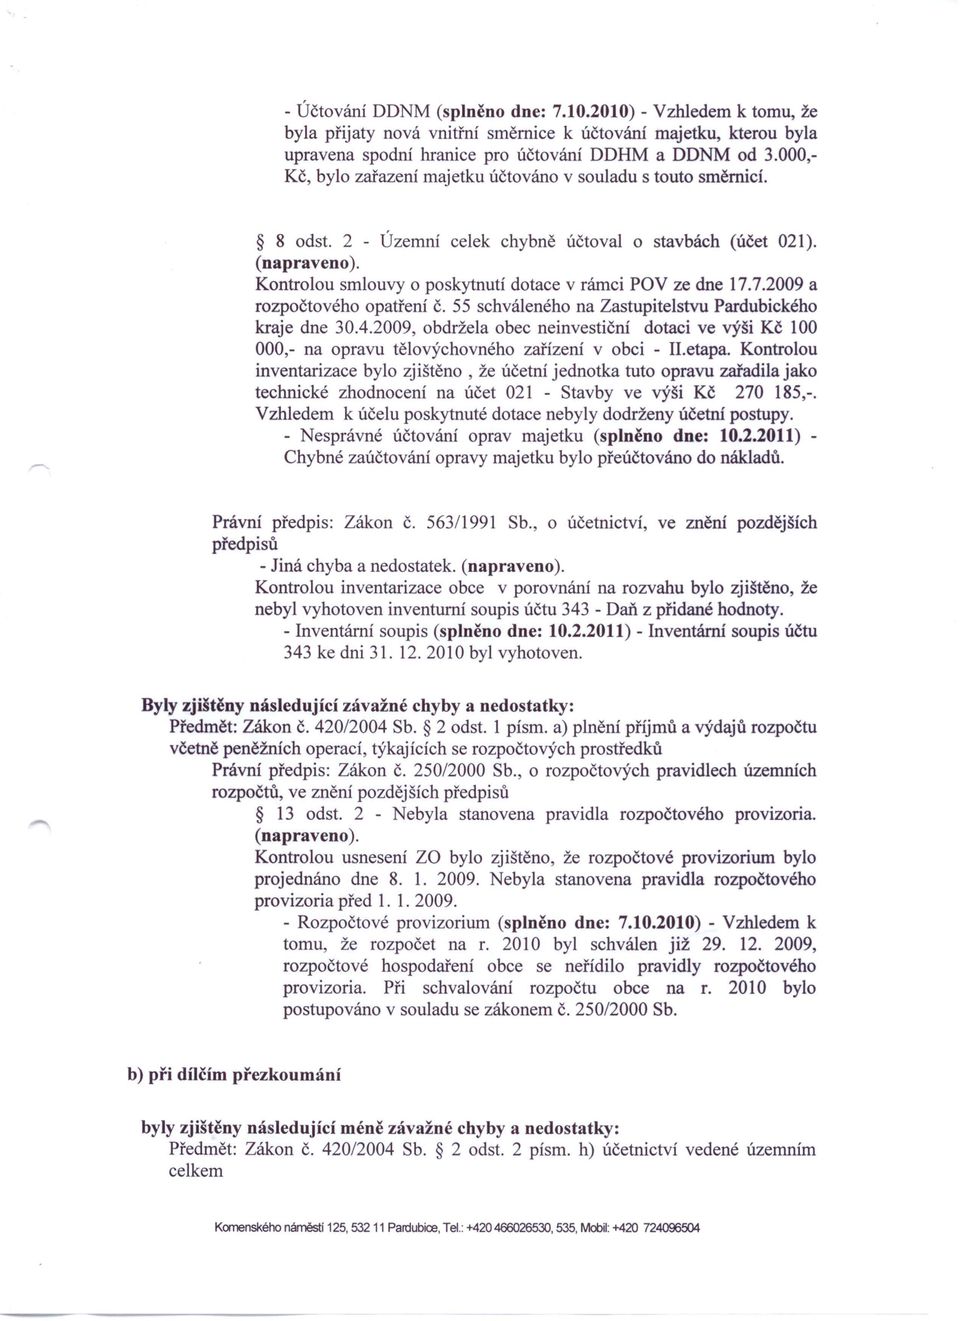 Kontrolou smlouvy o poskytnutí dotace v rámci POV ze dne 17.7.2009 a rozpočtového opatření č. 55 schváleného na Zastupitelstvu Pardubického kraje dne 30.4.